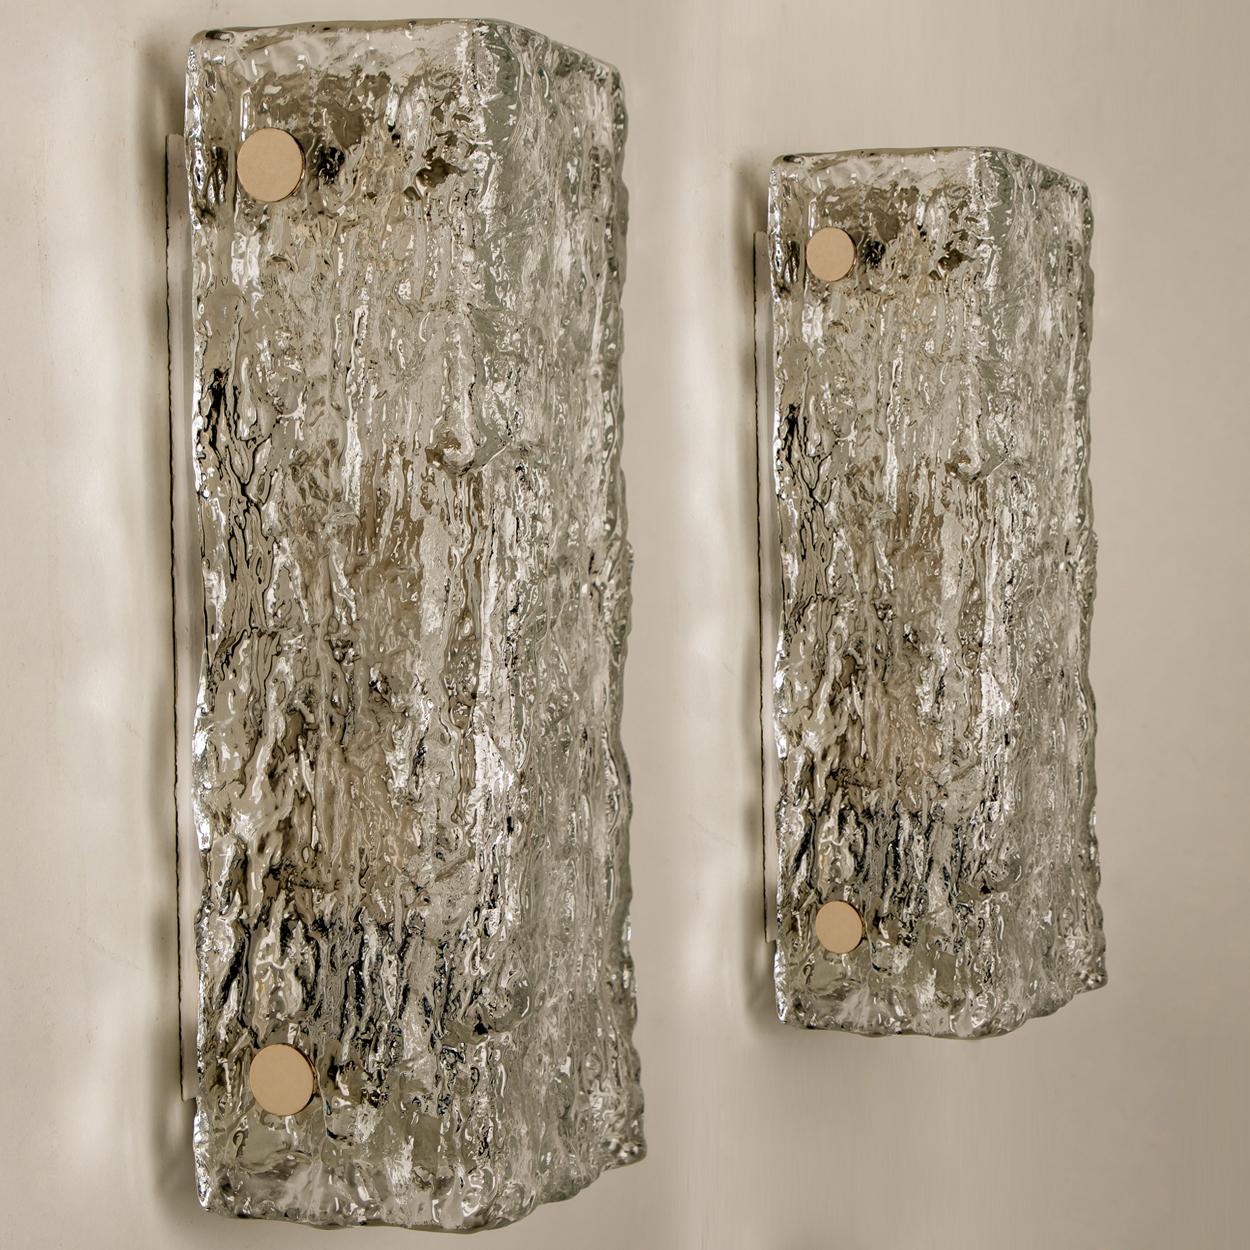 Eine der beiden Beleuchtungskörper von J.T. Kalmar, Wien, Österreich, hergestellt ca. 1960. Das Glas weist eine schöne Wellenstruktur auf, die einen schönen diffusen Lichteffekt und ein schönes Muster an der Decke, den Wänden und dem Boden erzeugt.